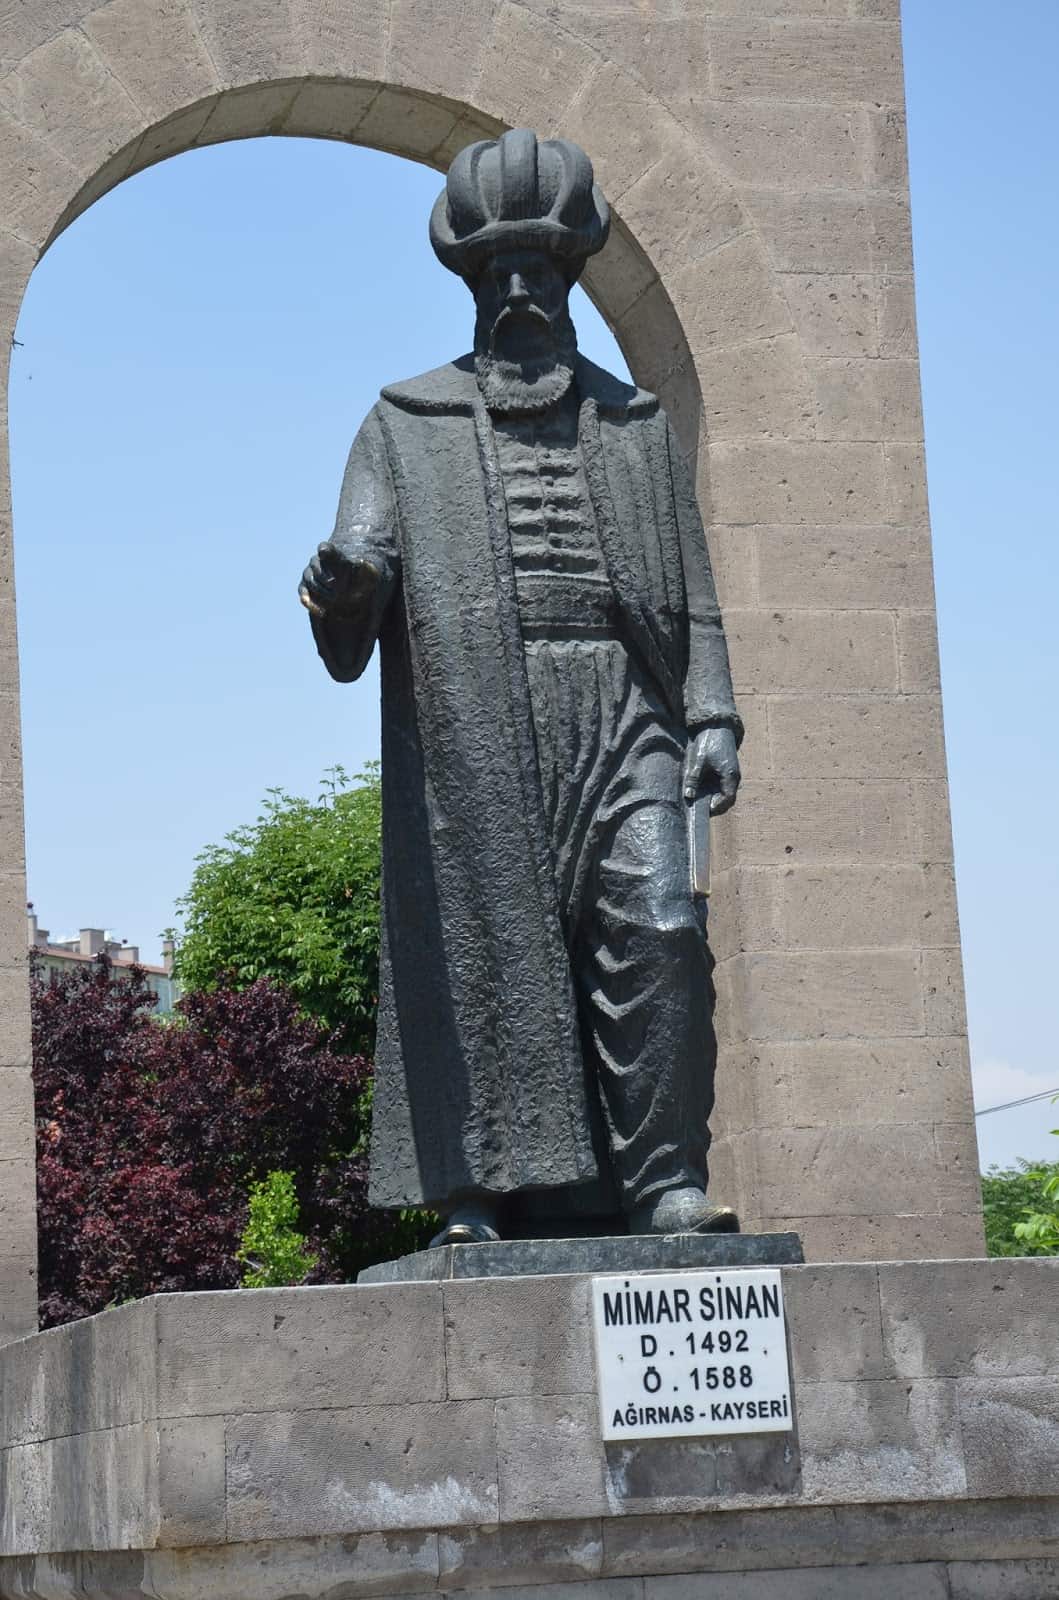 Mimar Sinan monument in Kayseri, Turkey